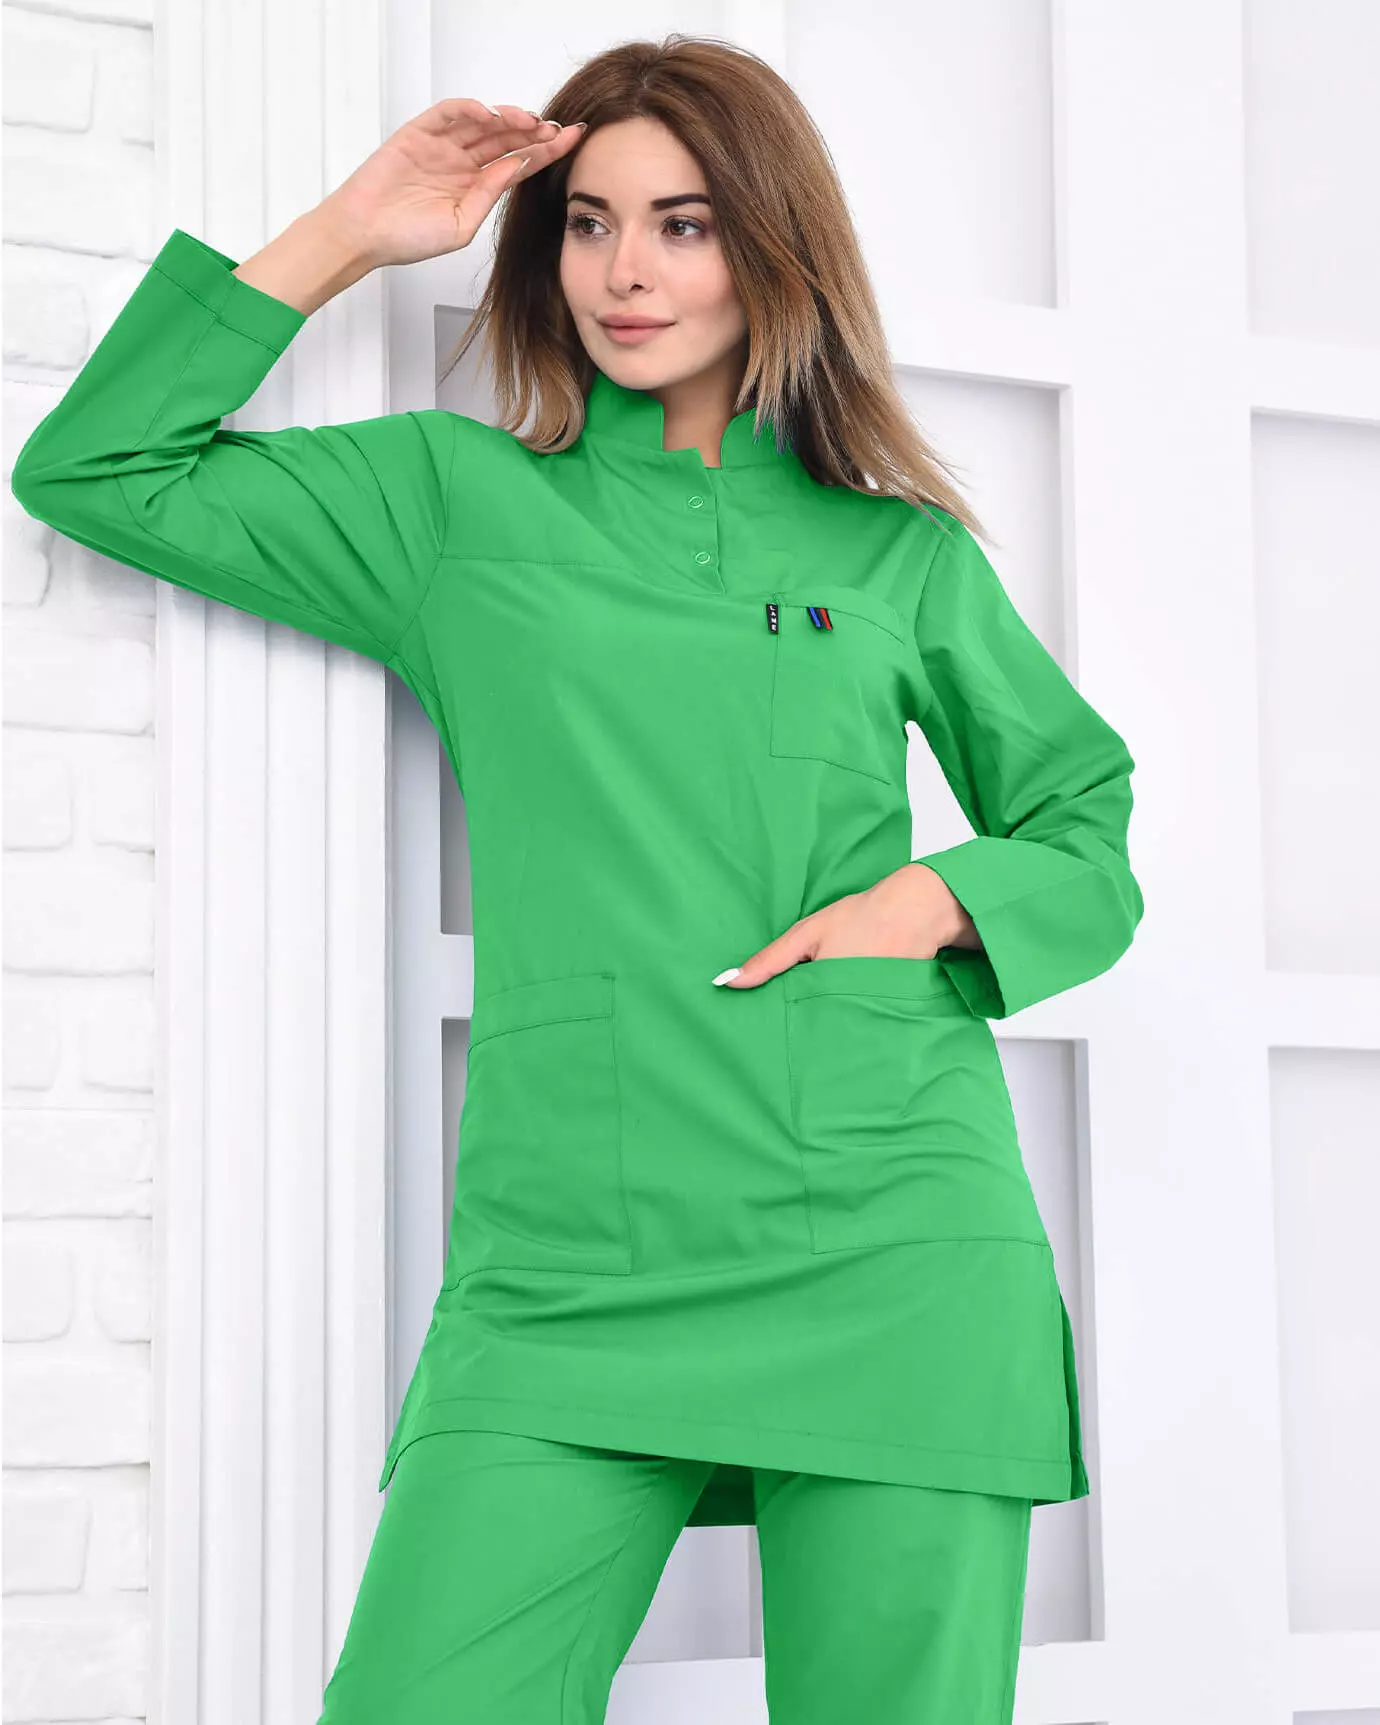 LAME Outlet - %100 Pamuk Likralı Benetton Yeşili Tesettür Hemşire Forması Üstü